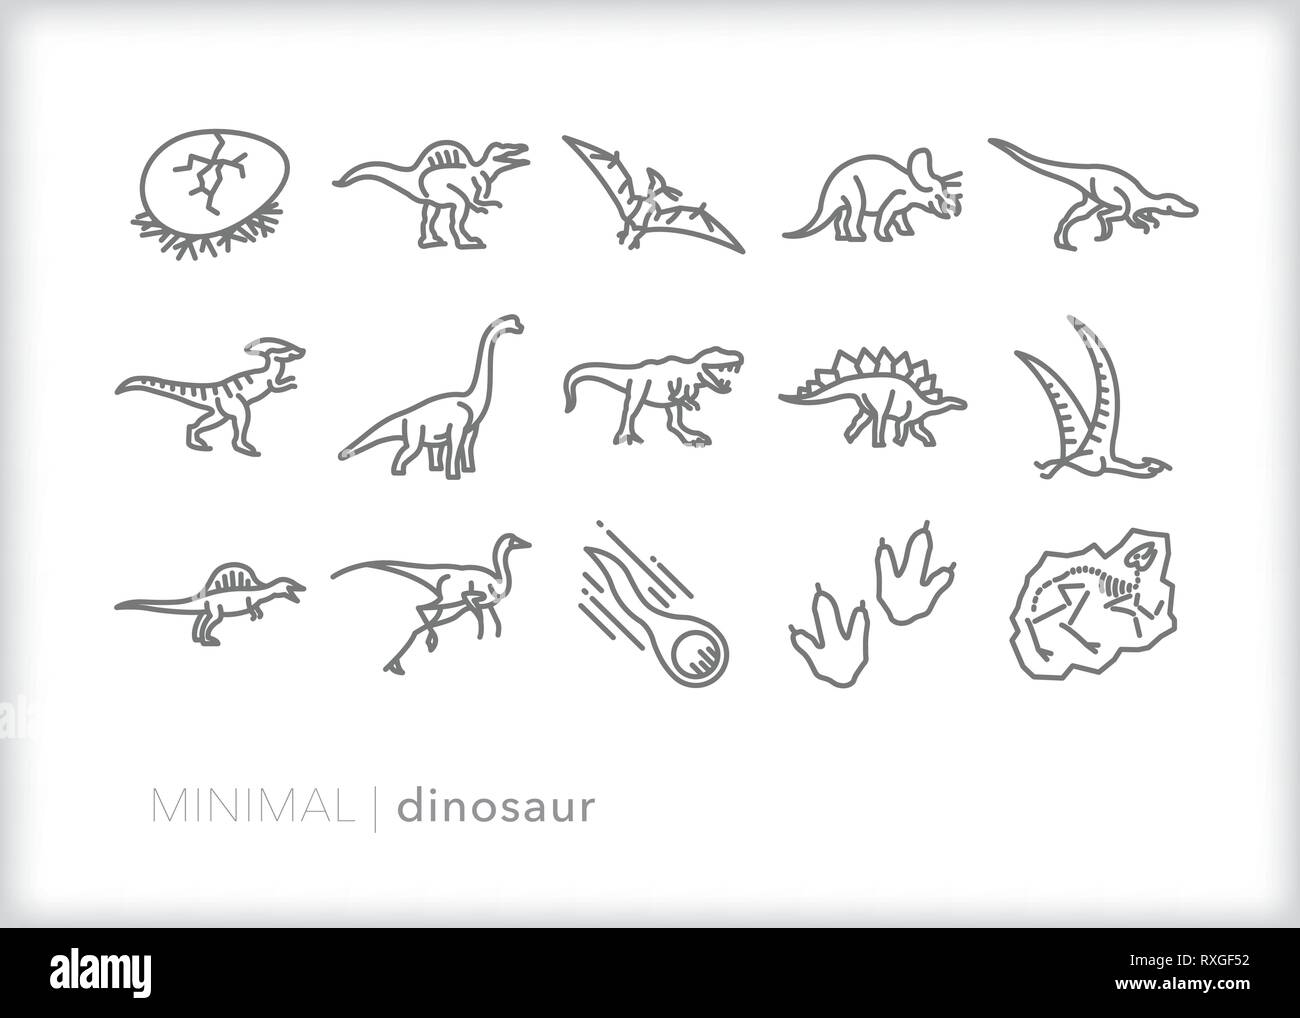 11+ Minimalist Dinosaur Tattoo Ideas That Will Blow Your Mind! - alexie